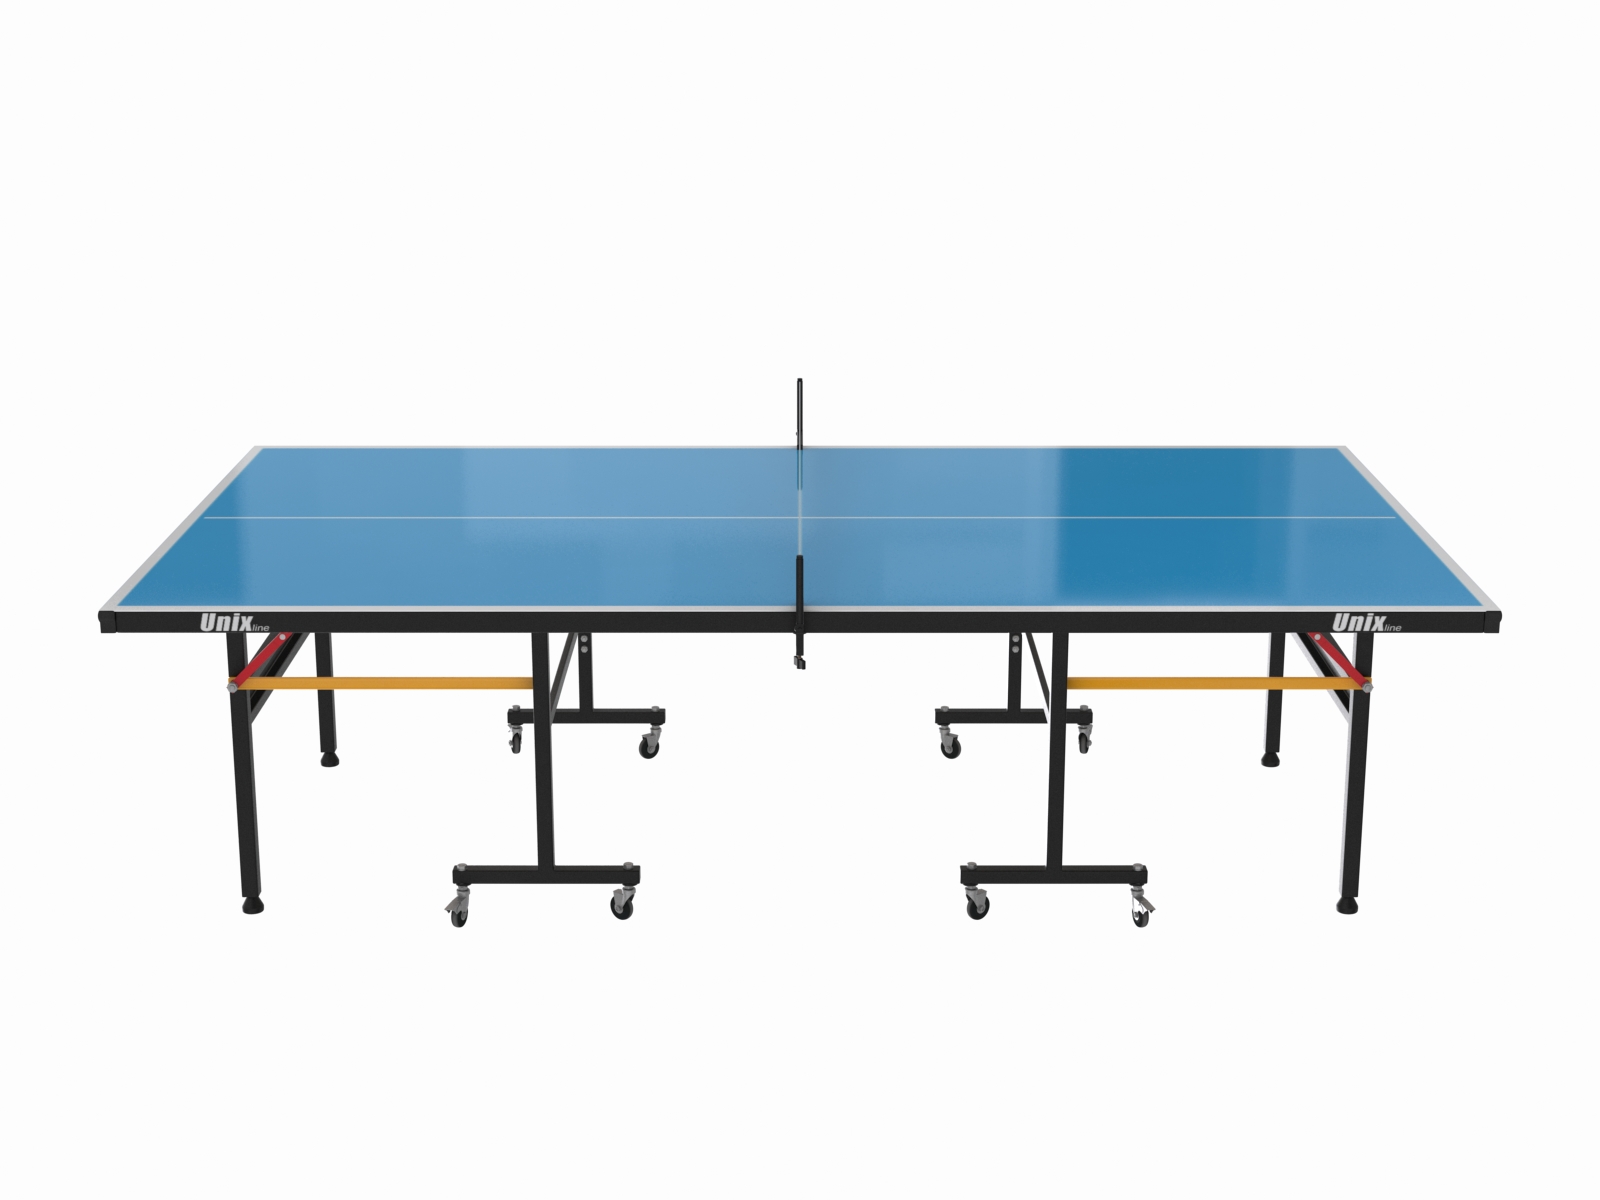 Всепогодный теннисный стол UNIX Line outdoor 6mm (blue) - 7 